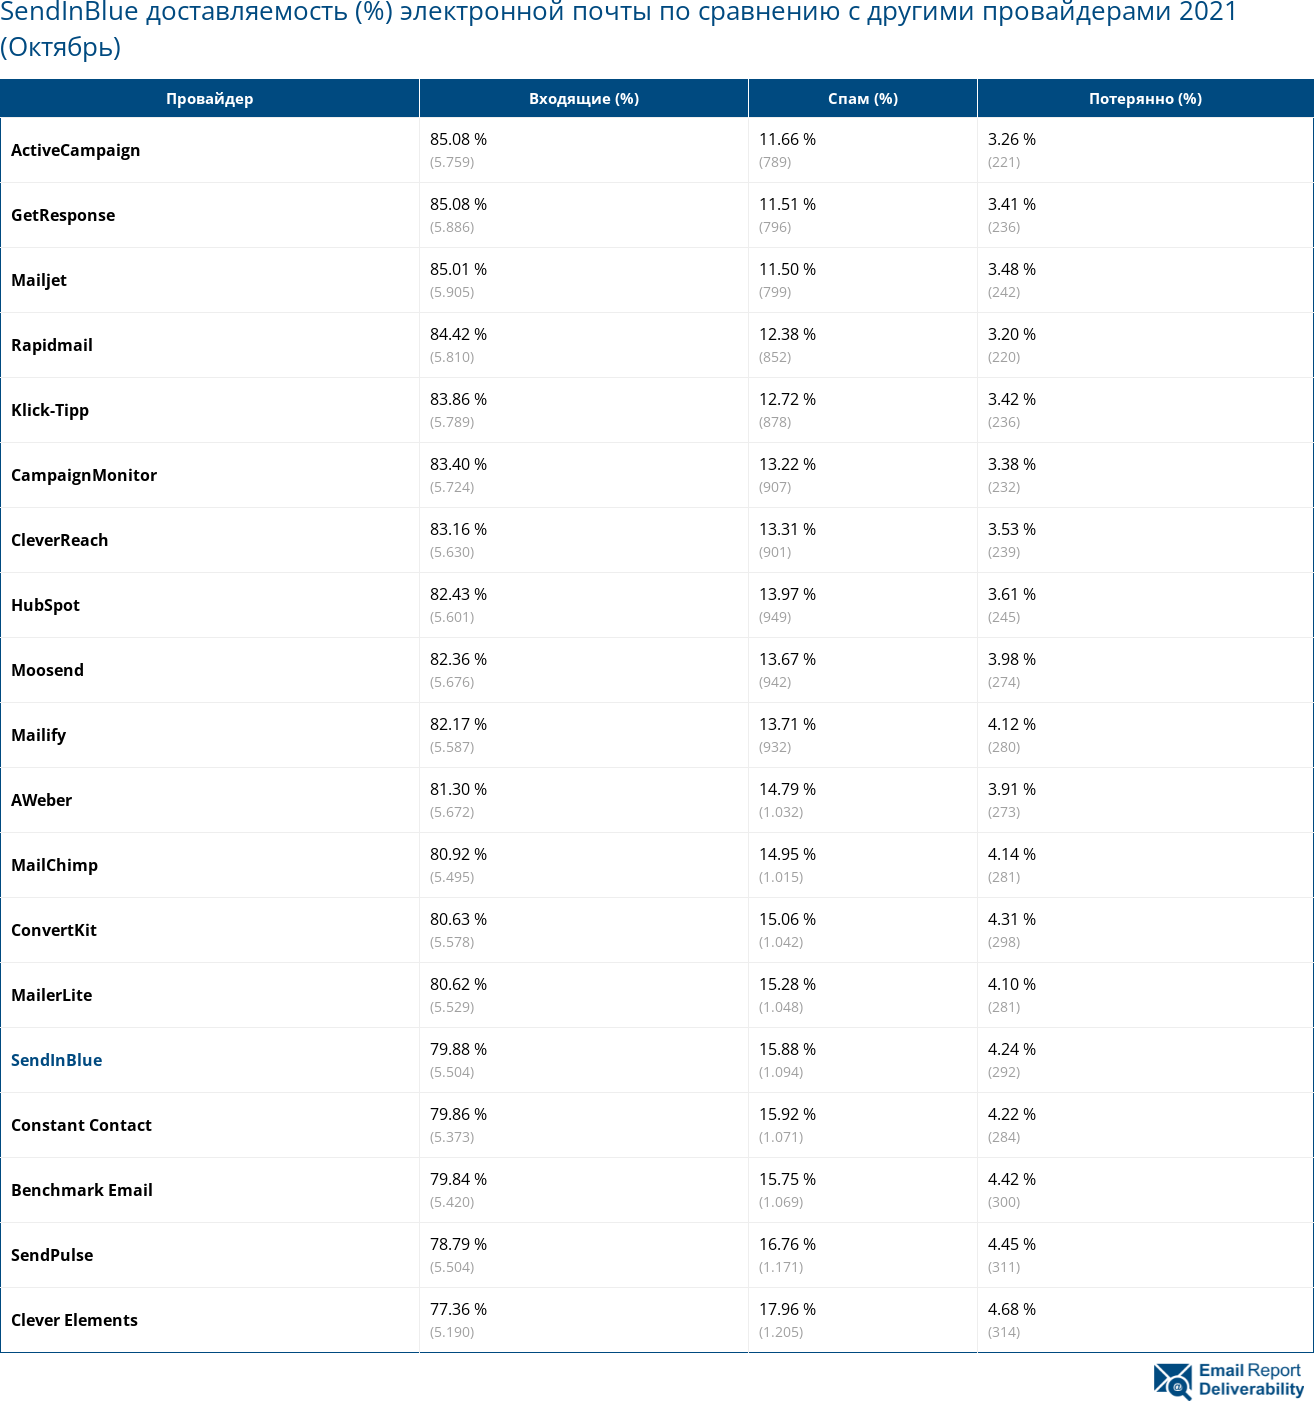 SendInBlue доставляемость (%) электронной почты по сравнению с другими провайдерами 2021 (Октябрь)